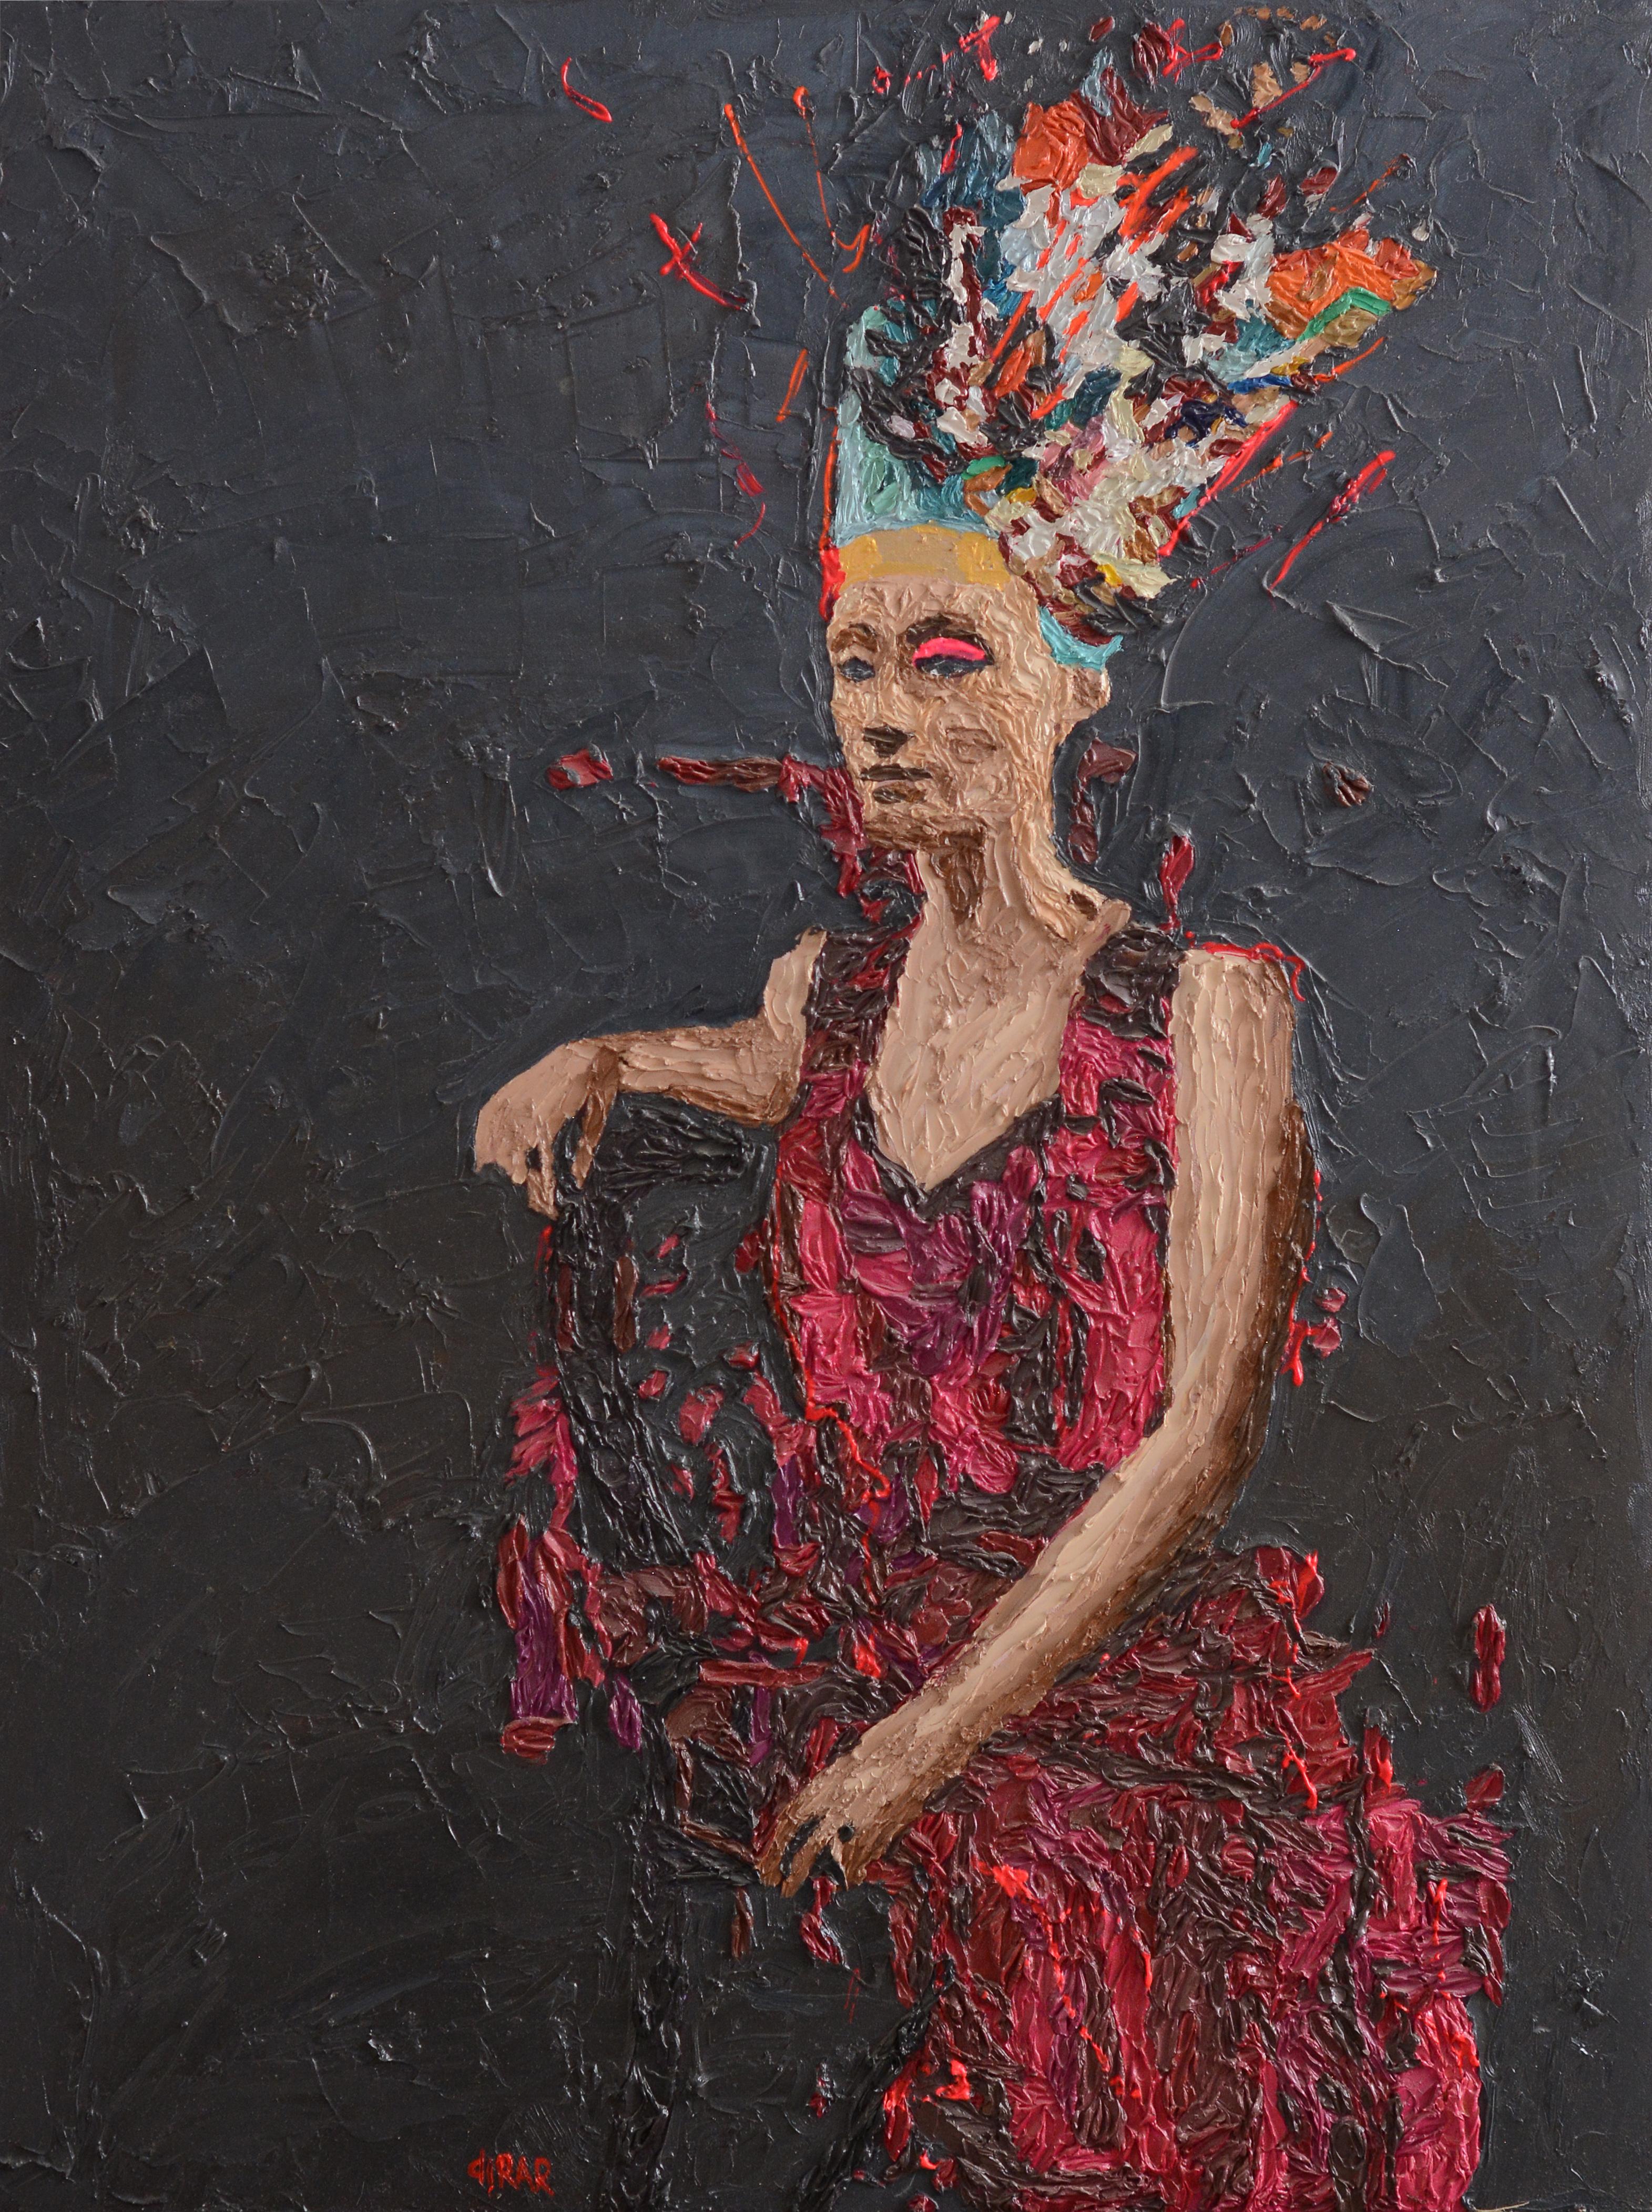 "Nofretete 6"  ölgemälde von Hossam Dirar 
aus der Nofretete-Serie, 2018 
Öl auf Leinwand 
39" x 30" Zoll
100 x 75 cm

* * * NOFRETETE * * * 
"Nofretete" ist eine große Einzelausstellung von Hossam Dirar, einem der angesehensten figurativen Maler in